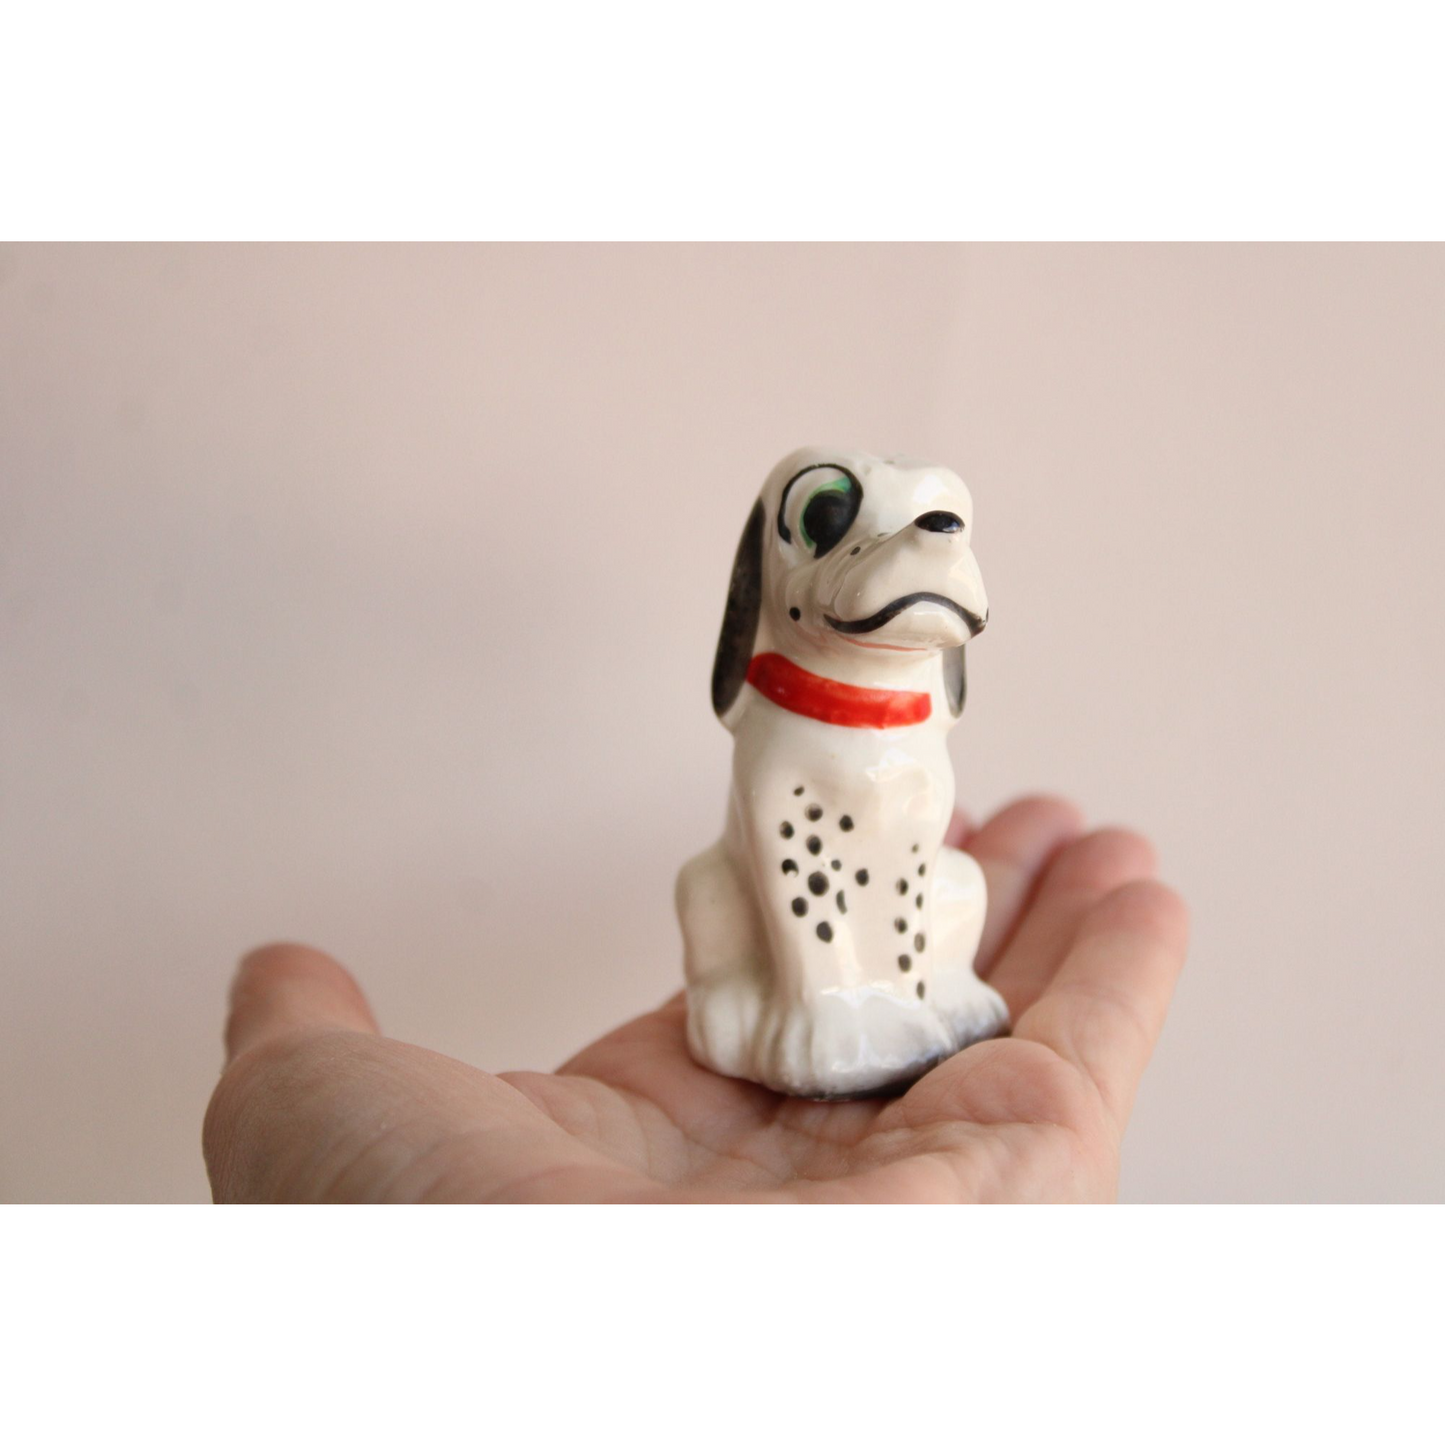 Vintage 1950s Dalmatian Dog Salt and Pepper Shaker